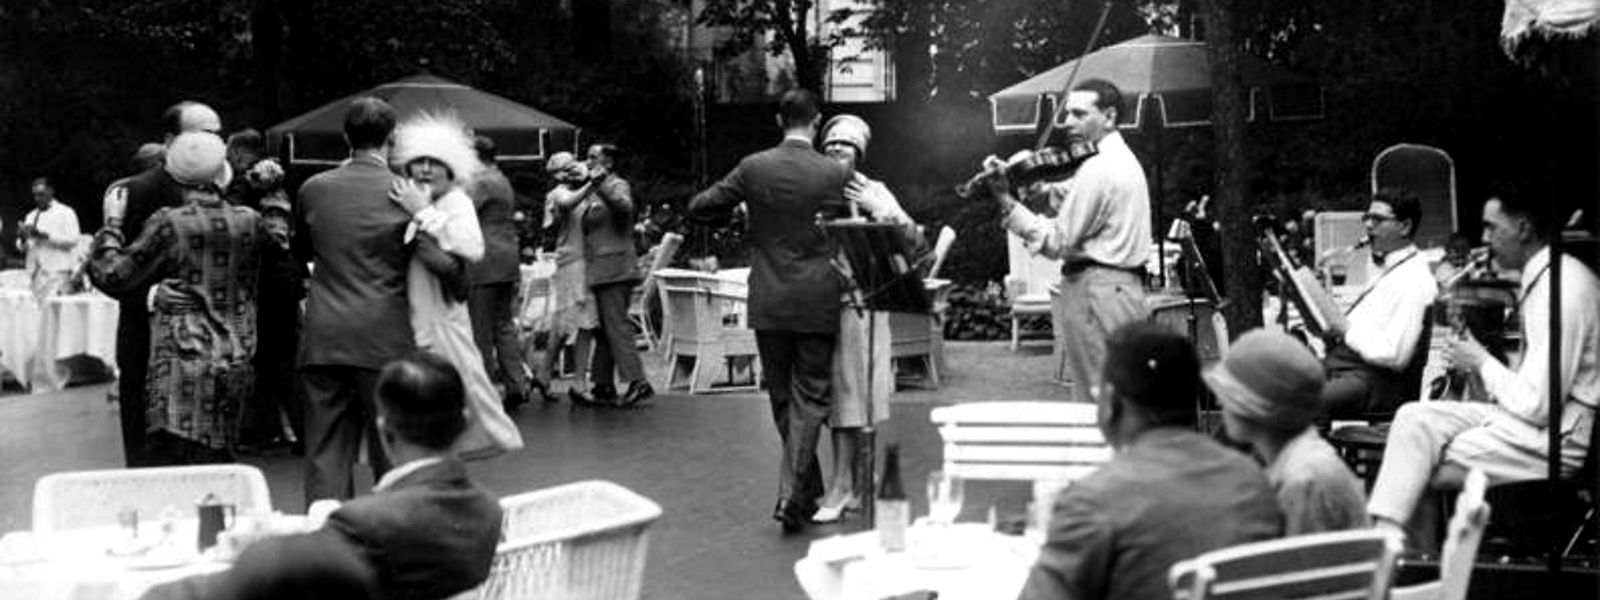 Bereits in den 1920er-Jahren trat der Jazz seinen Siegeszug in Deutschland an, wie hier 1926 beim "Tanztee" im Esplanade in Berlin.